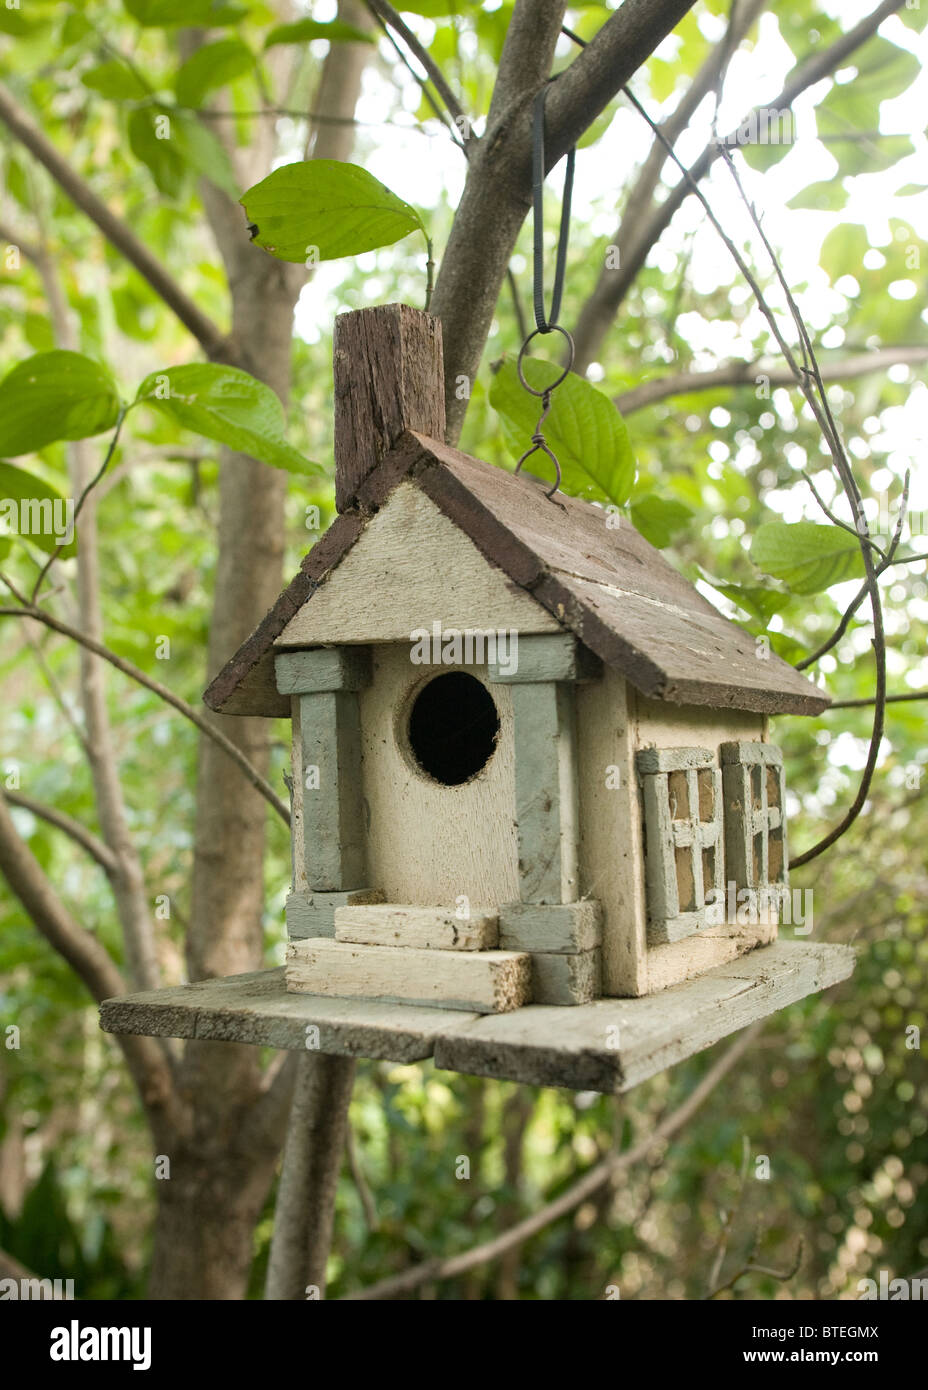 Birdhouse. Stock Photo